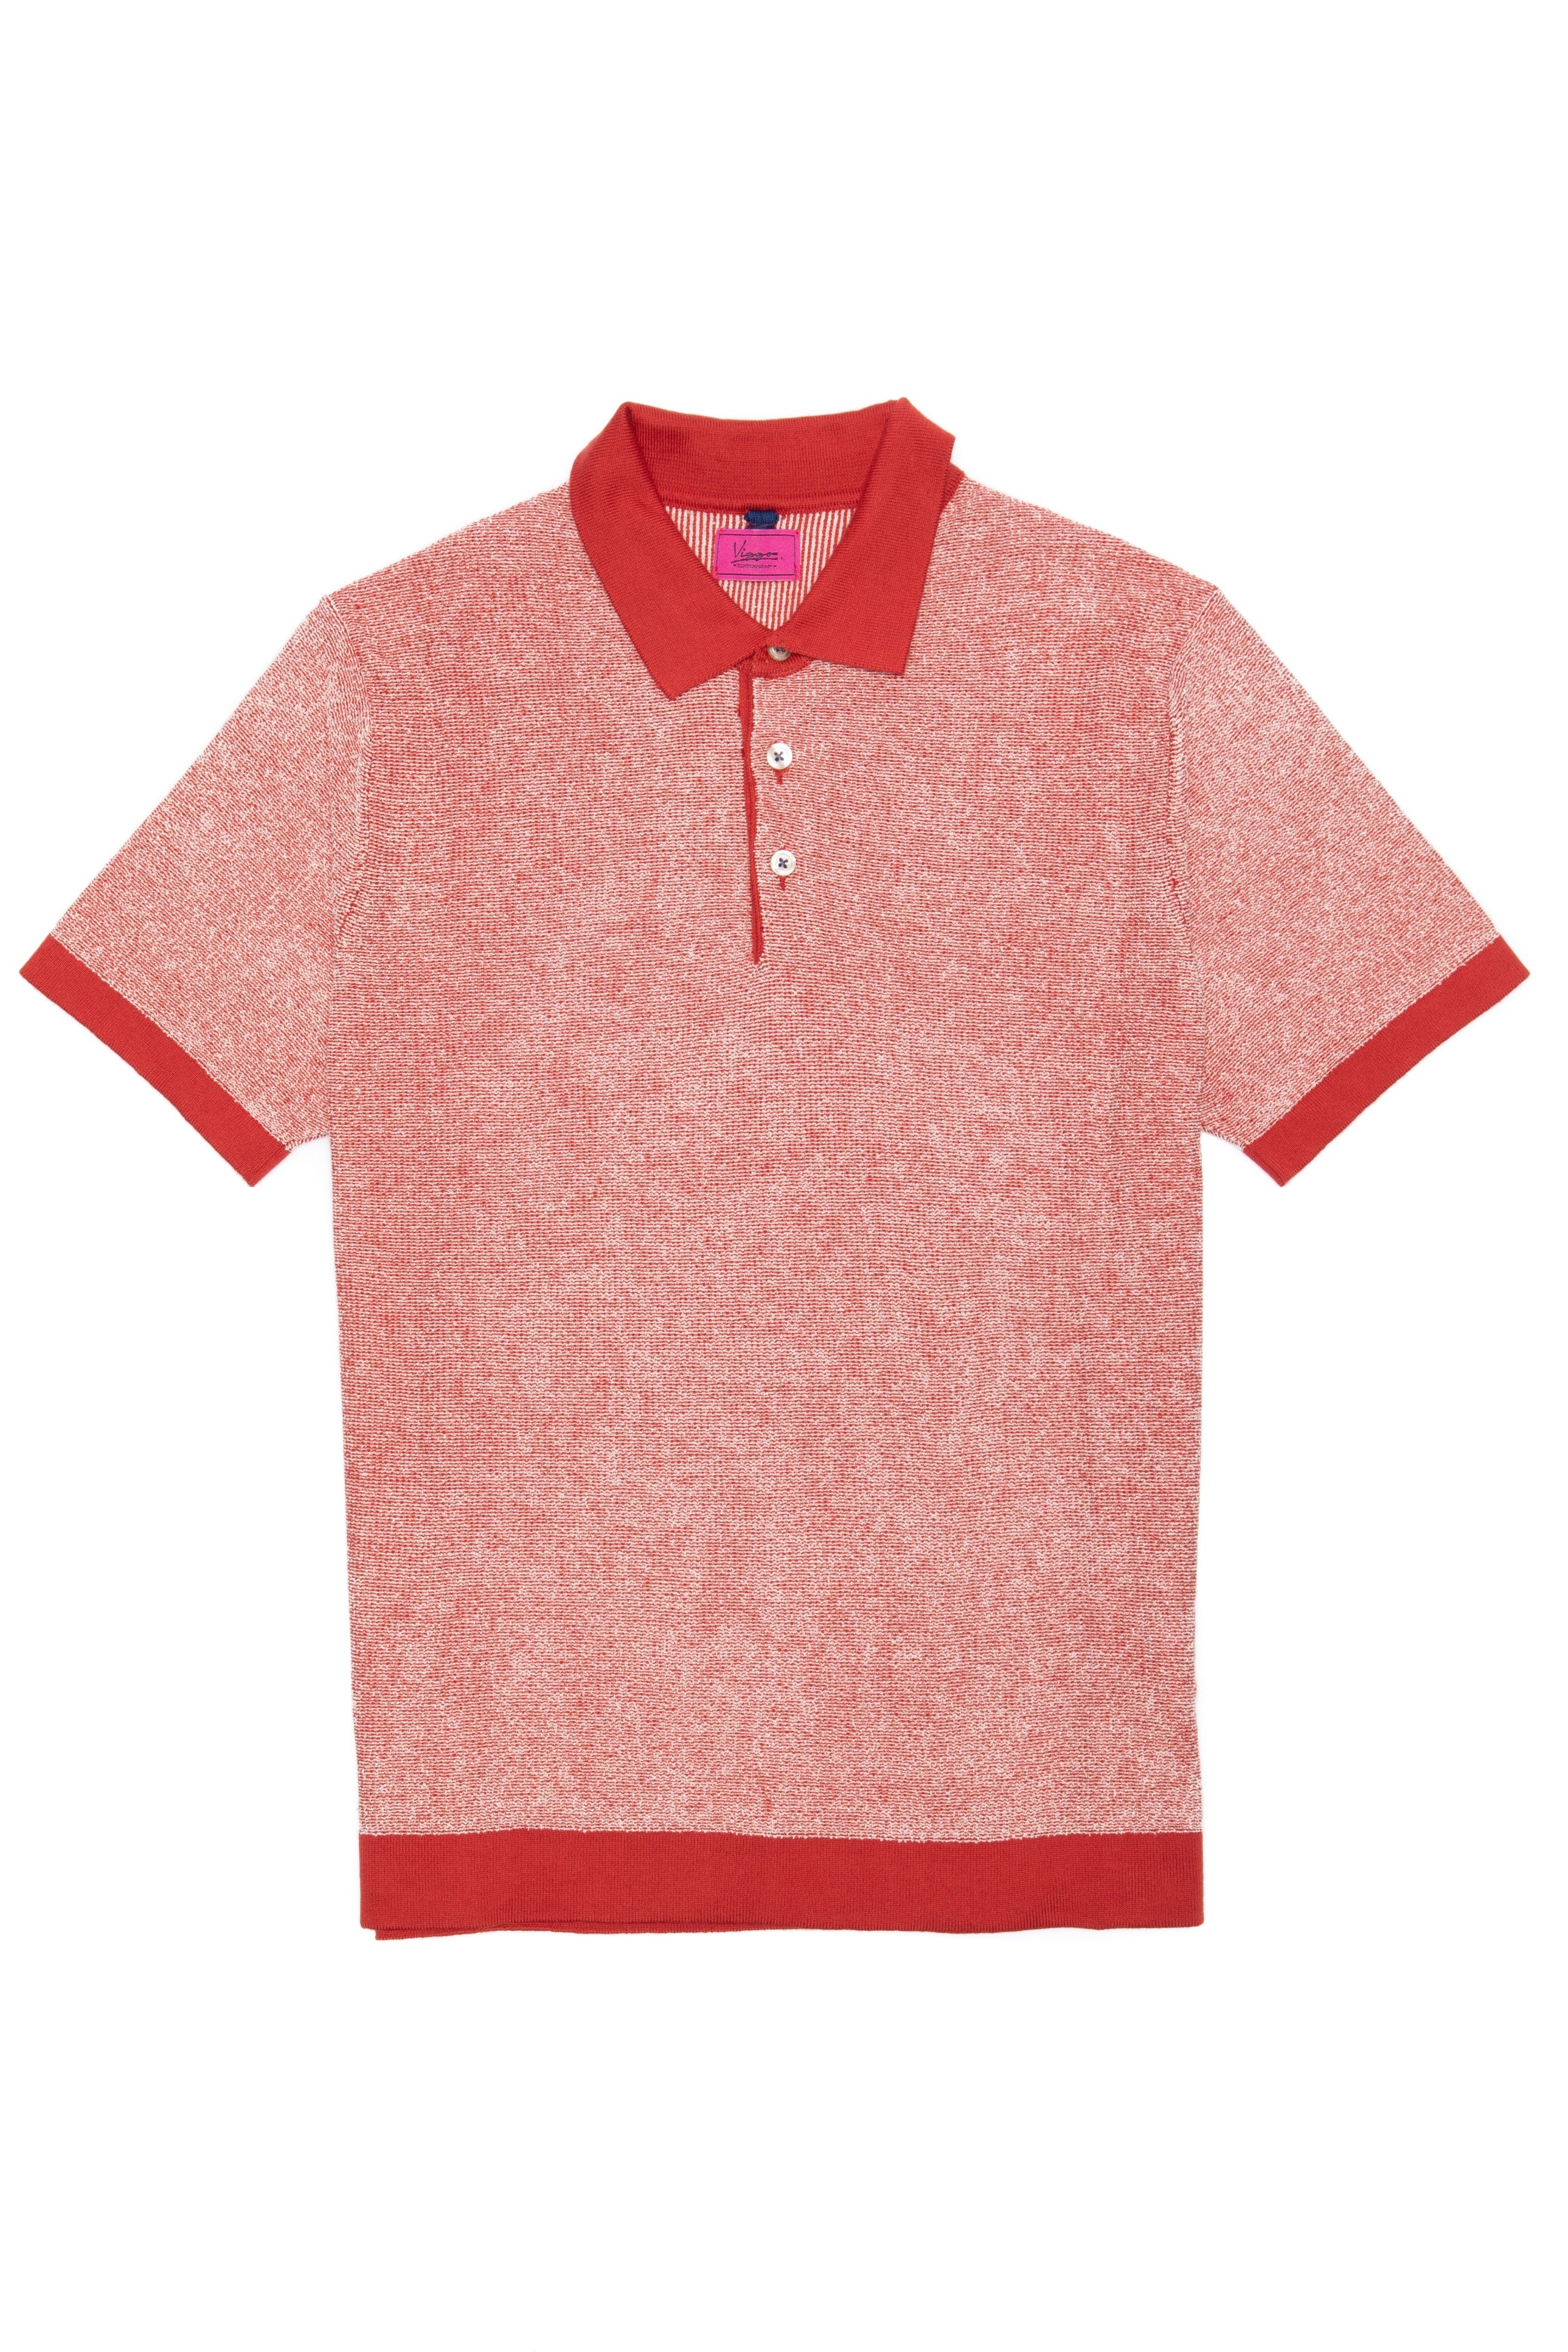 白とポロの襟が付いた赤のカジュアル T シャツ